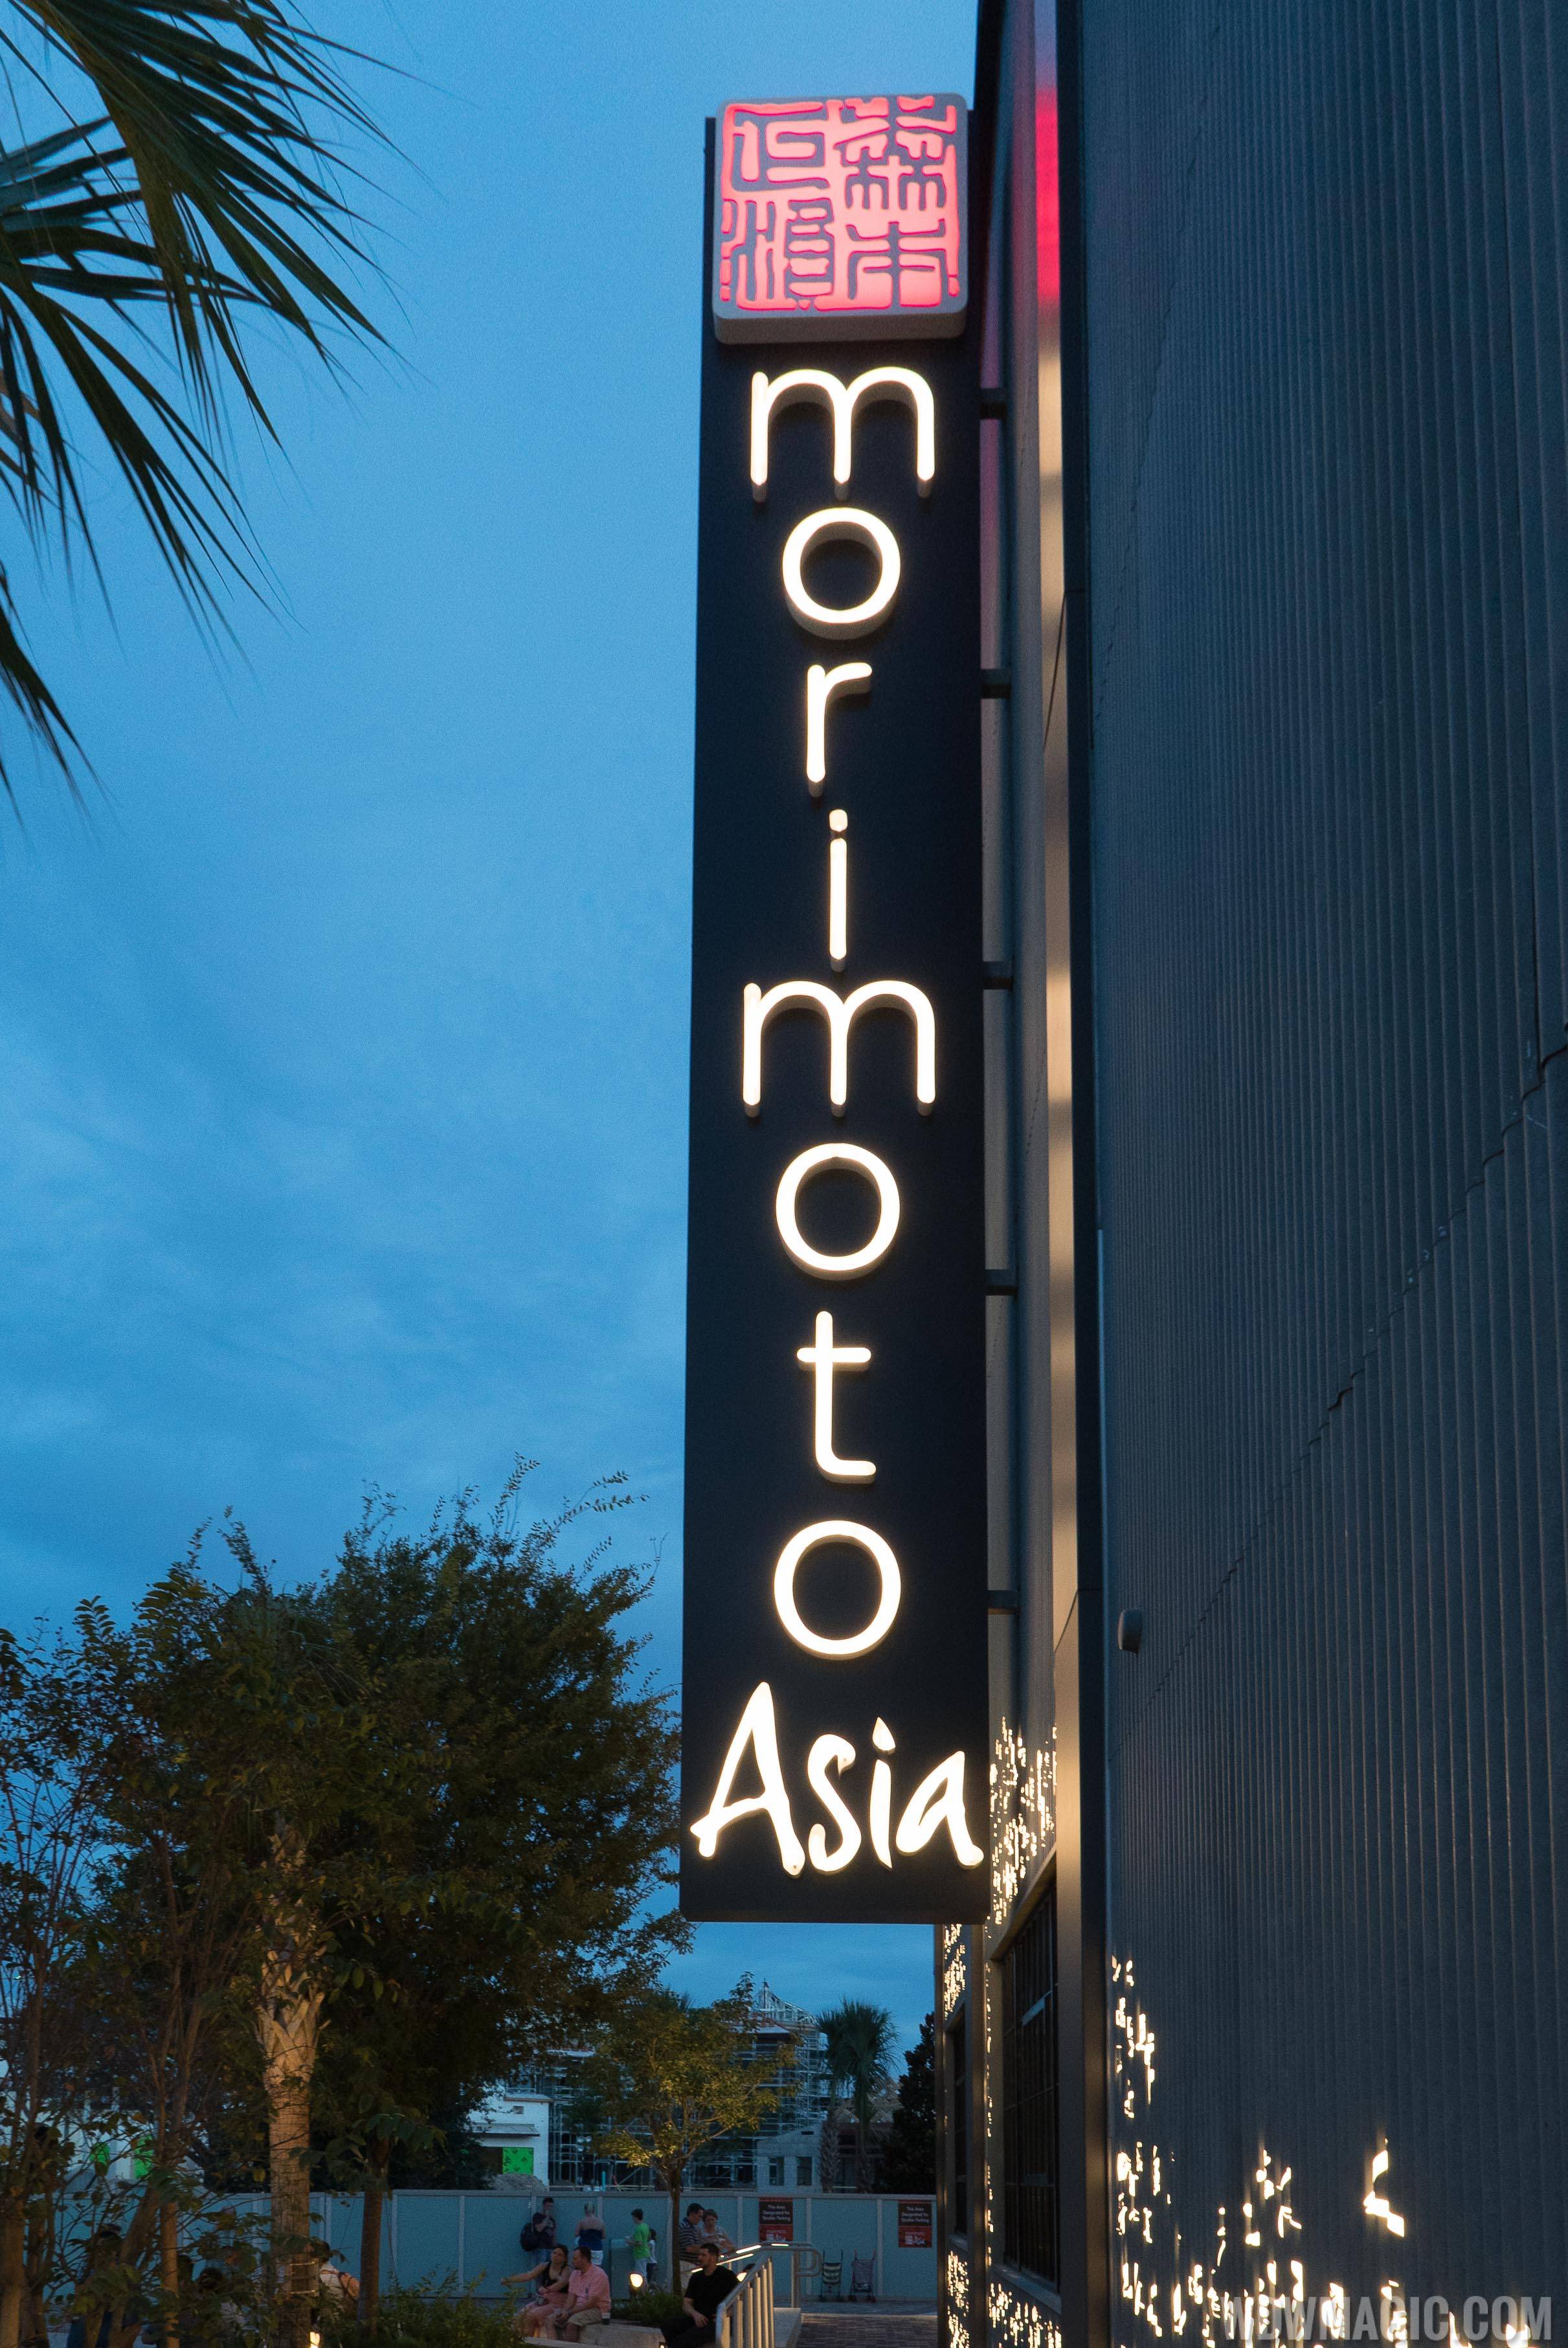 Morimoto Asia - Sign after dark